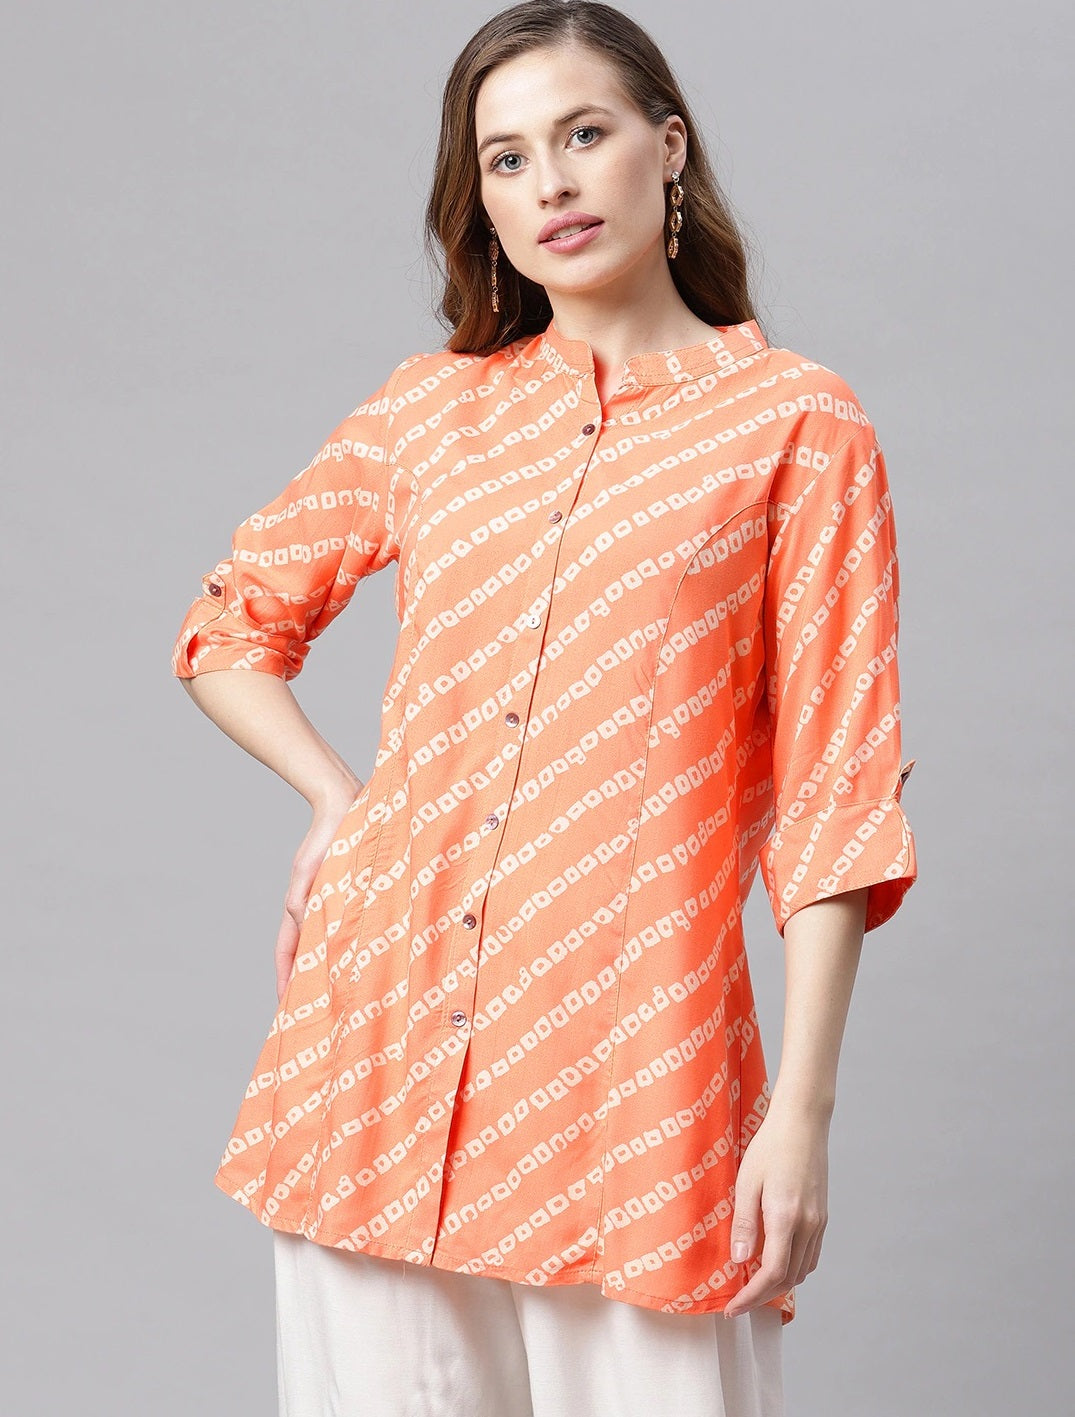 Women's Orange Bandhani Rayon A-Line Shirt Style Top - Noz2Toz